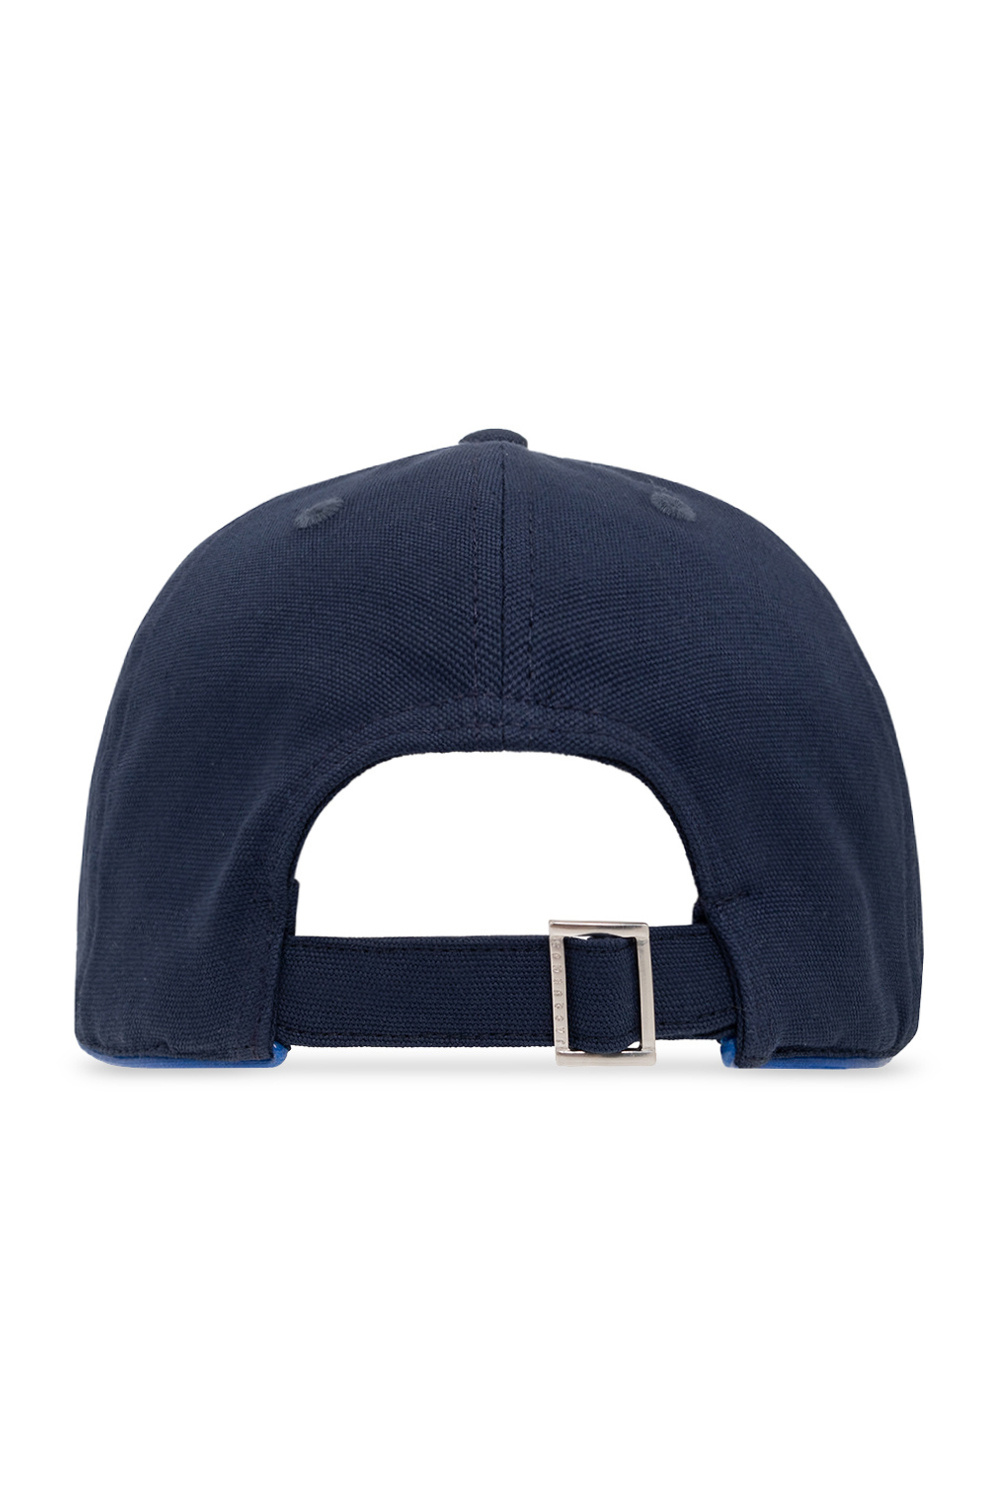 Shop Louis Vuitton Unisex Street Style Bold Caps (Casquette